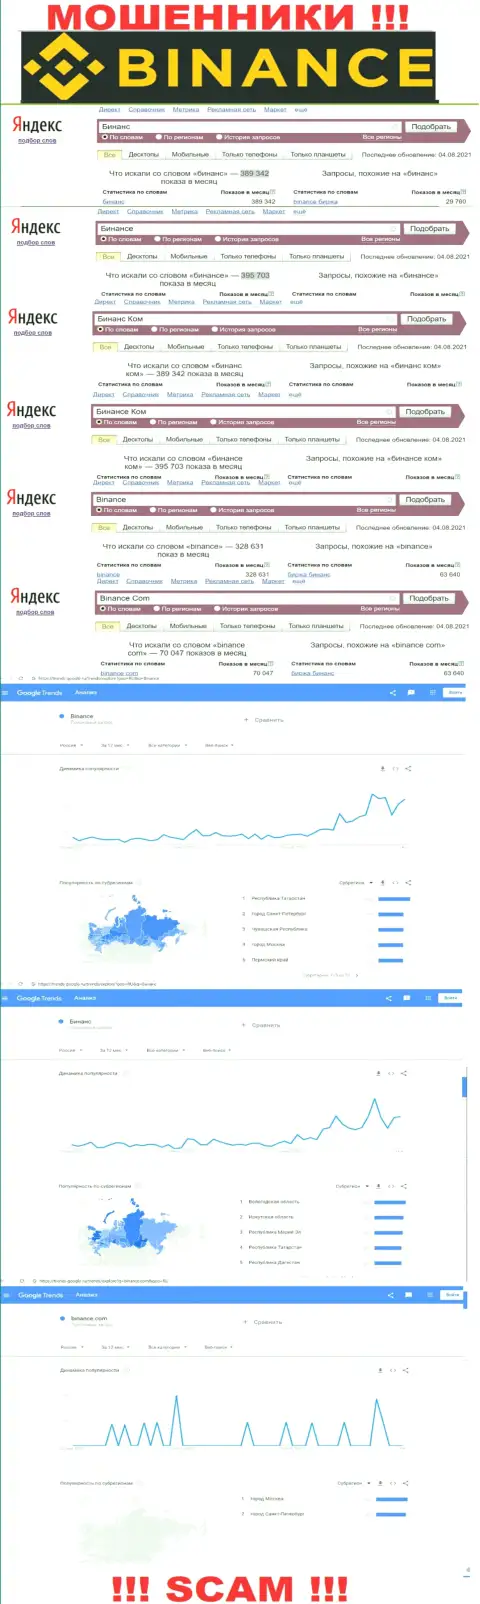 Статистические показатели о запросах в поисковиках всемирной internet сети информации о компании Binance